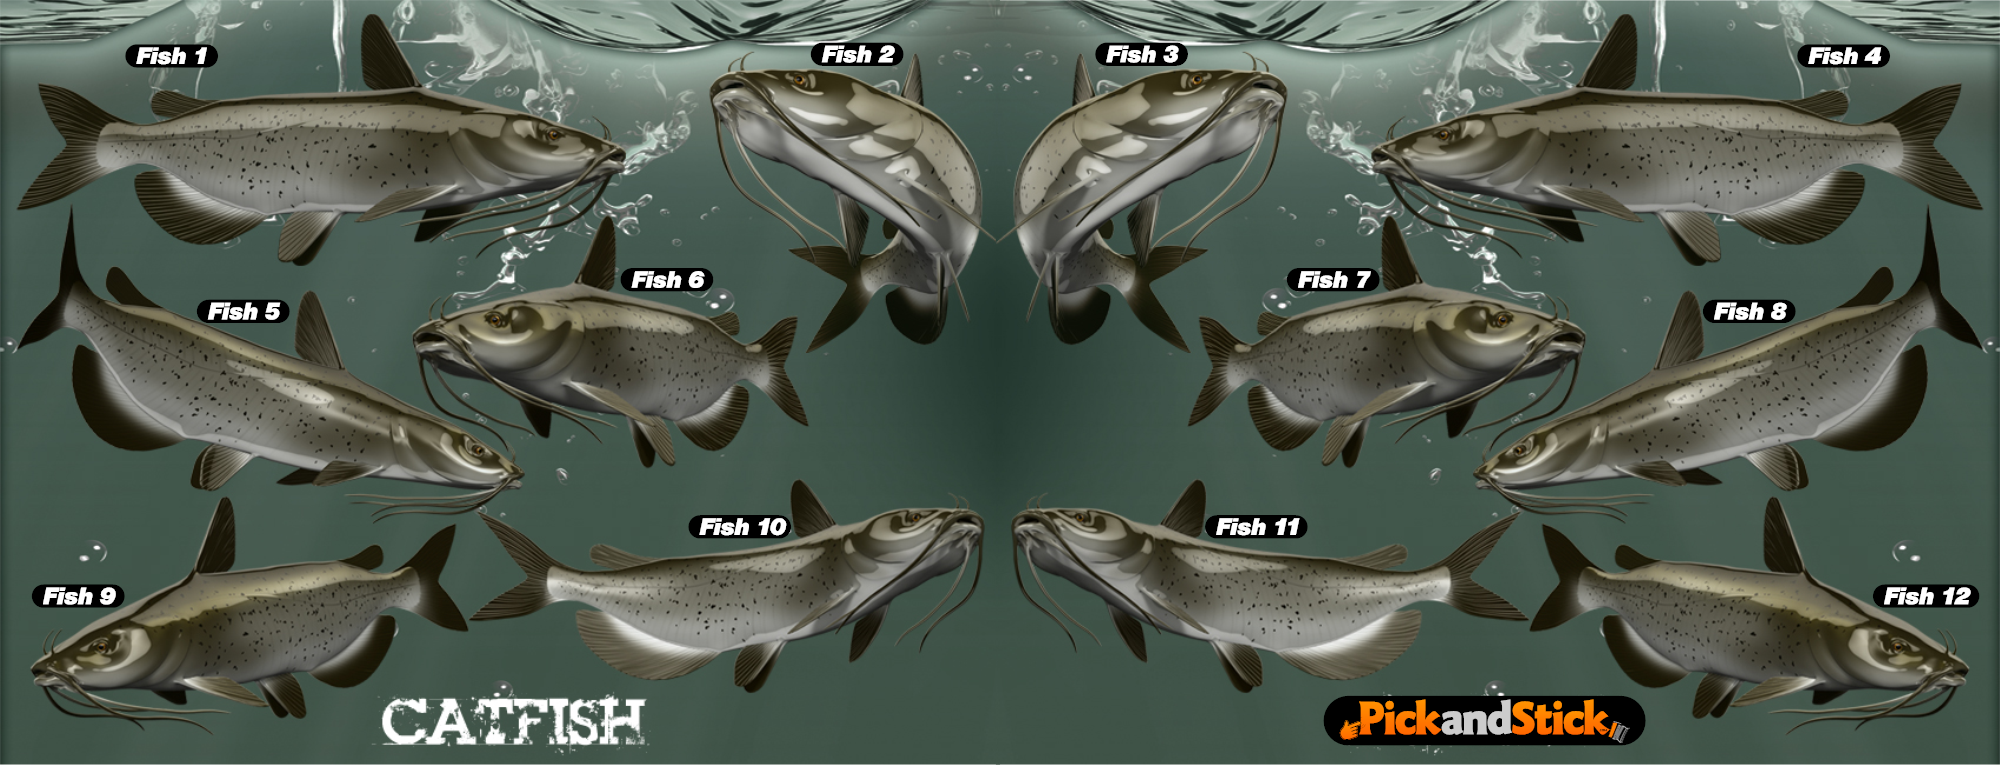 Catfish Fish Decals - PickandStickcom